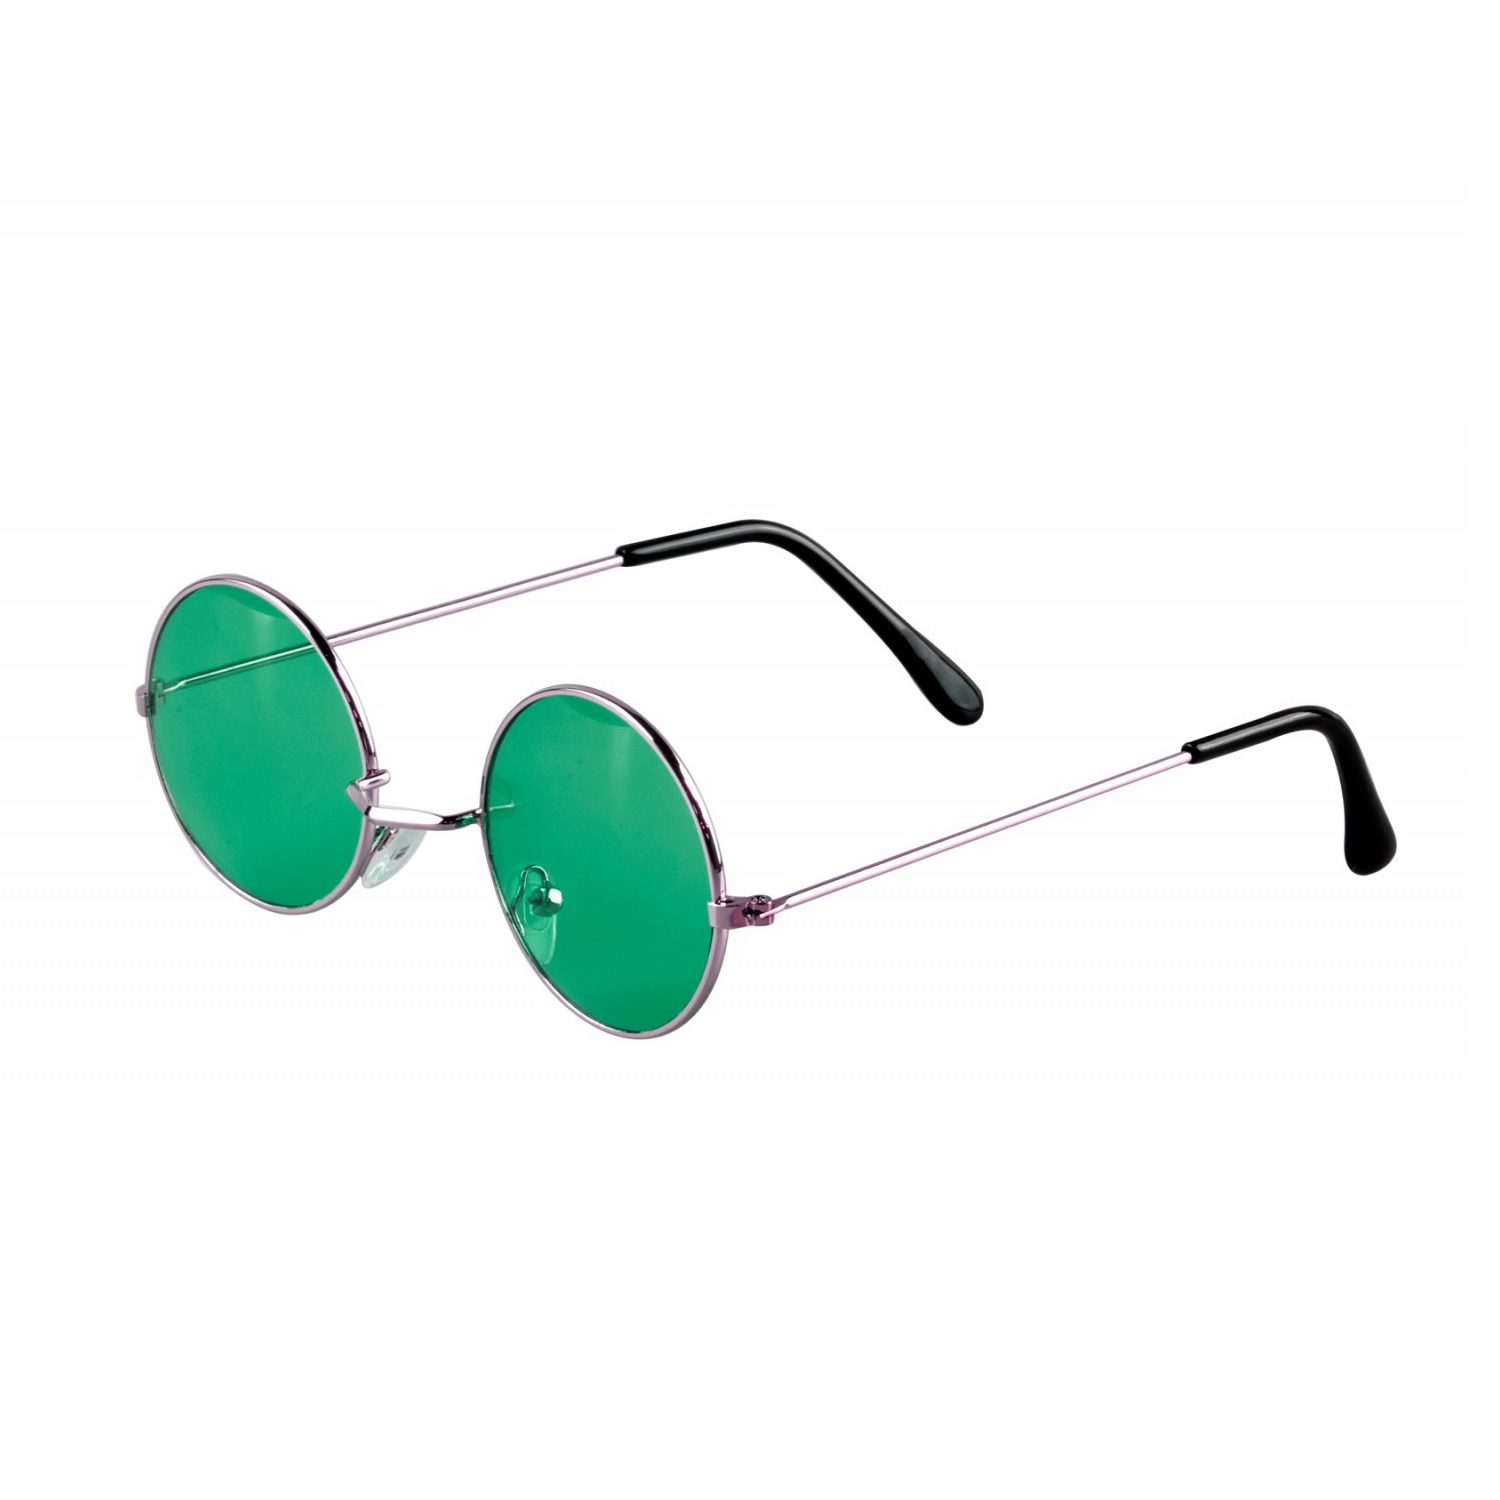 Brille Hippie, runde, grüne Gläser aus Metall - Grün